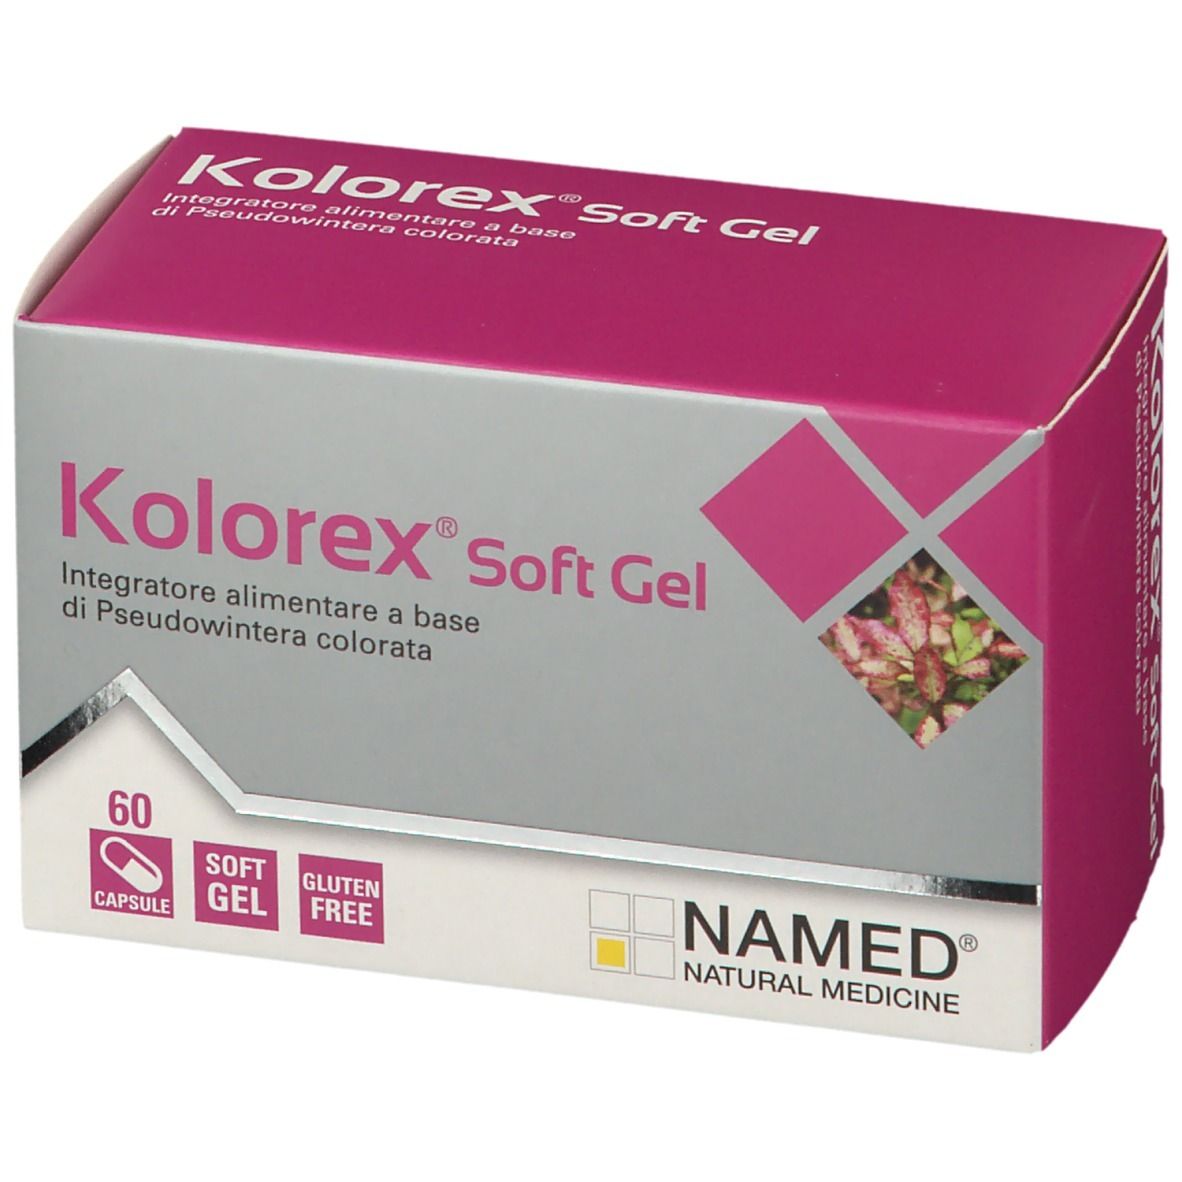 NAMED® Kolorex® Soft Gel 60 Capsule